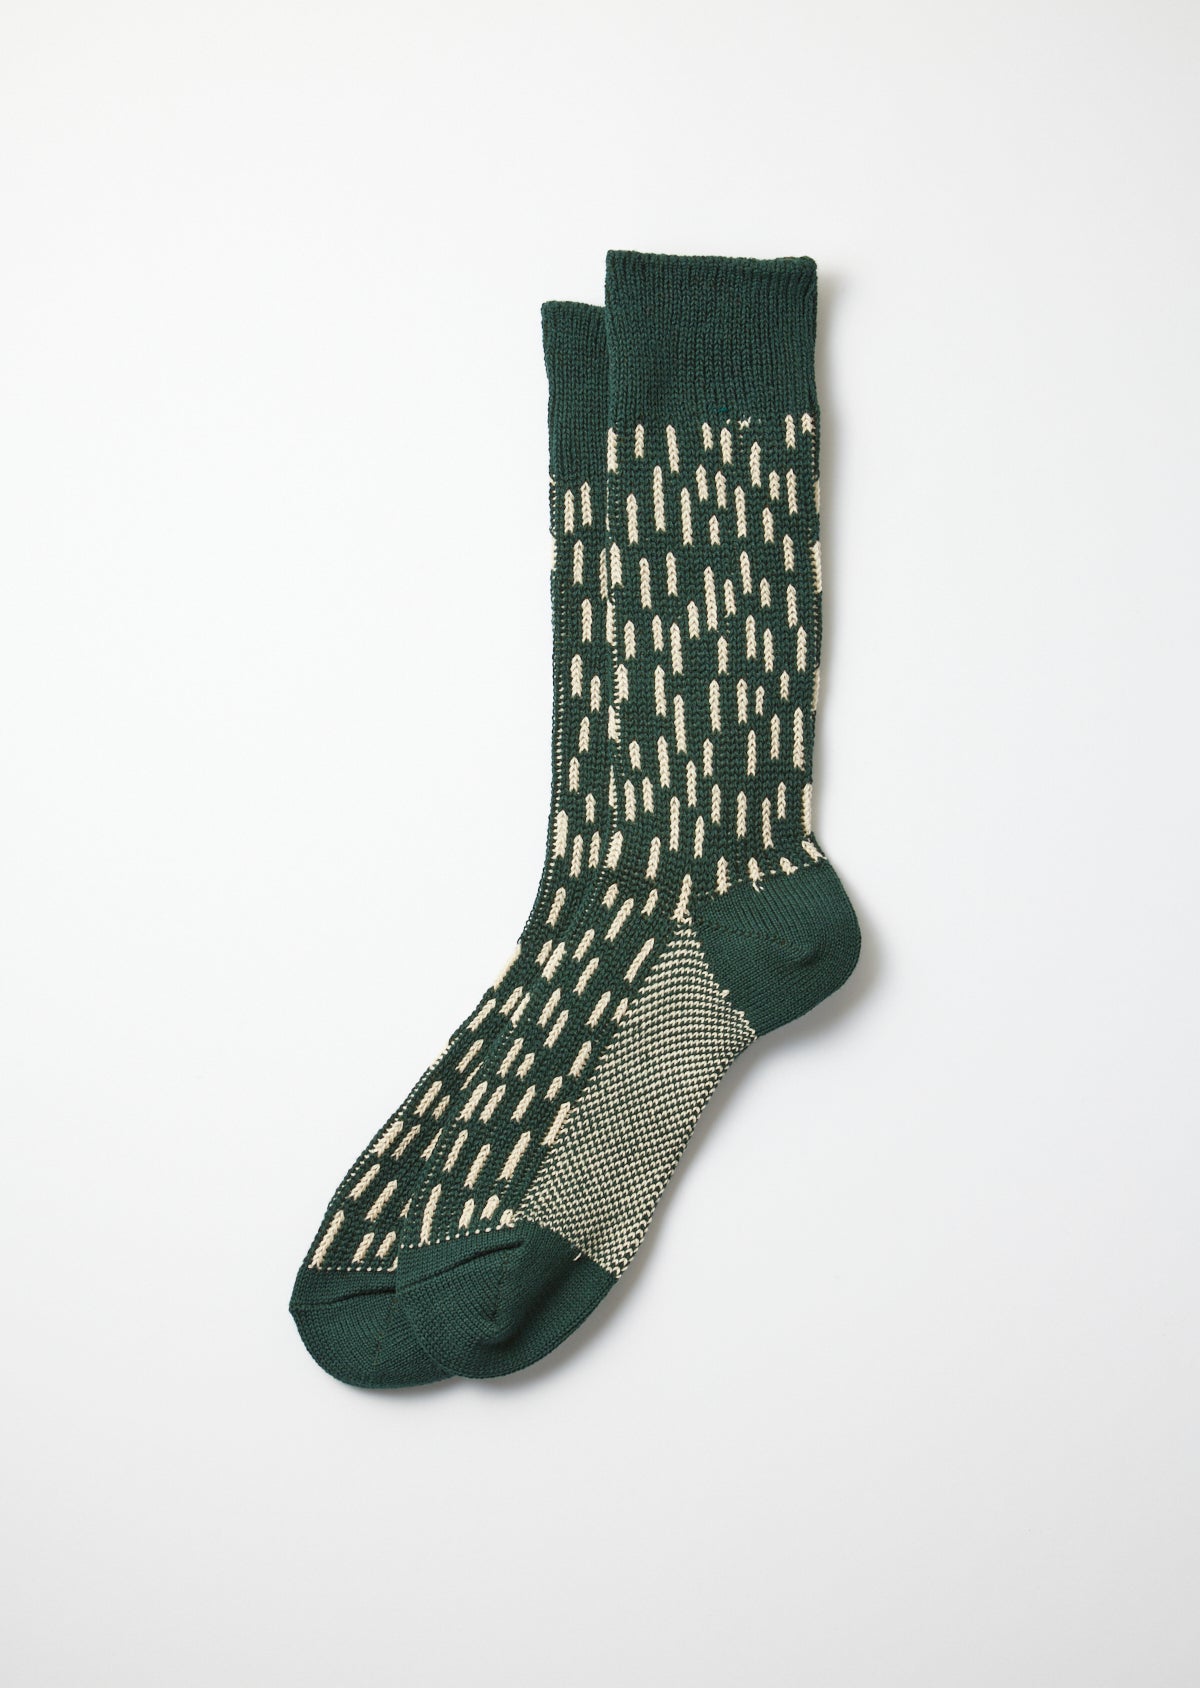 Regentropfen Socken dunkelgrün